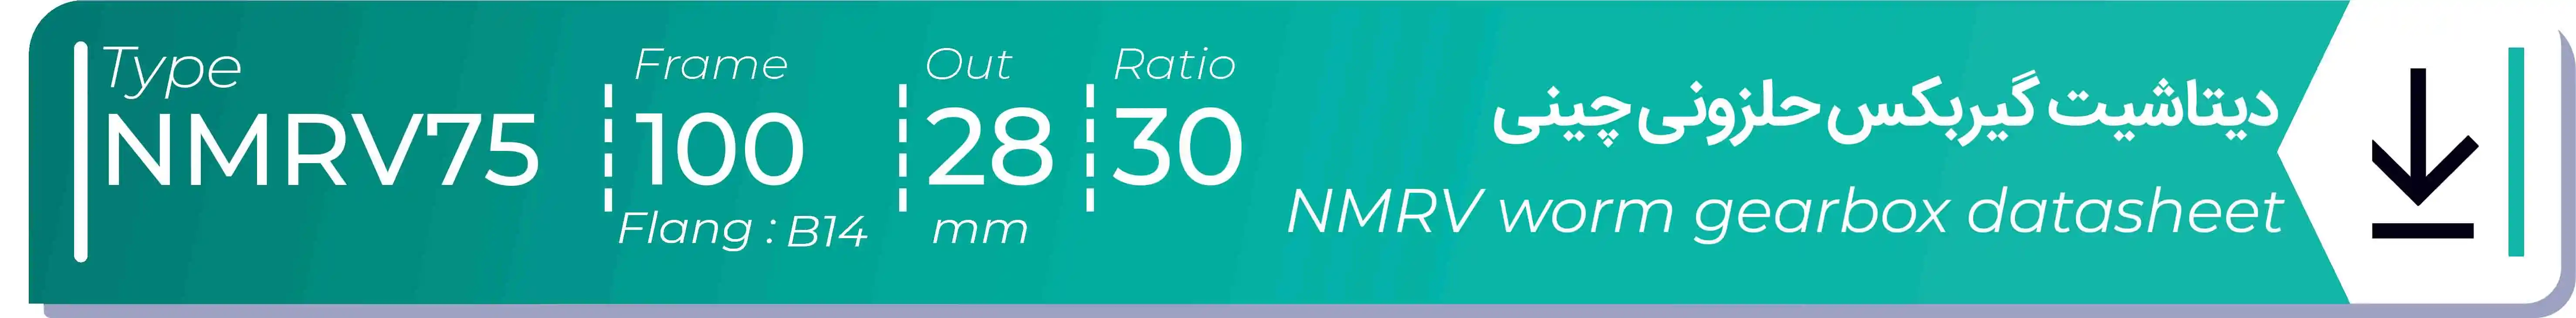  دیتاشیت و مشخصات فنی گیربکس حلزونی چینی   NMRV75  -  با خروجی 28- میلی متر و نسبت30 و فریم 100